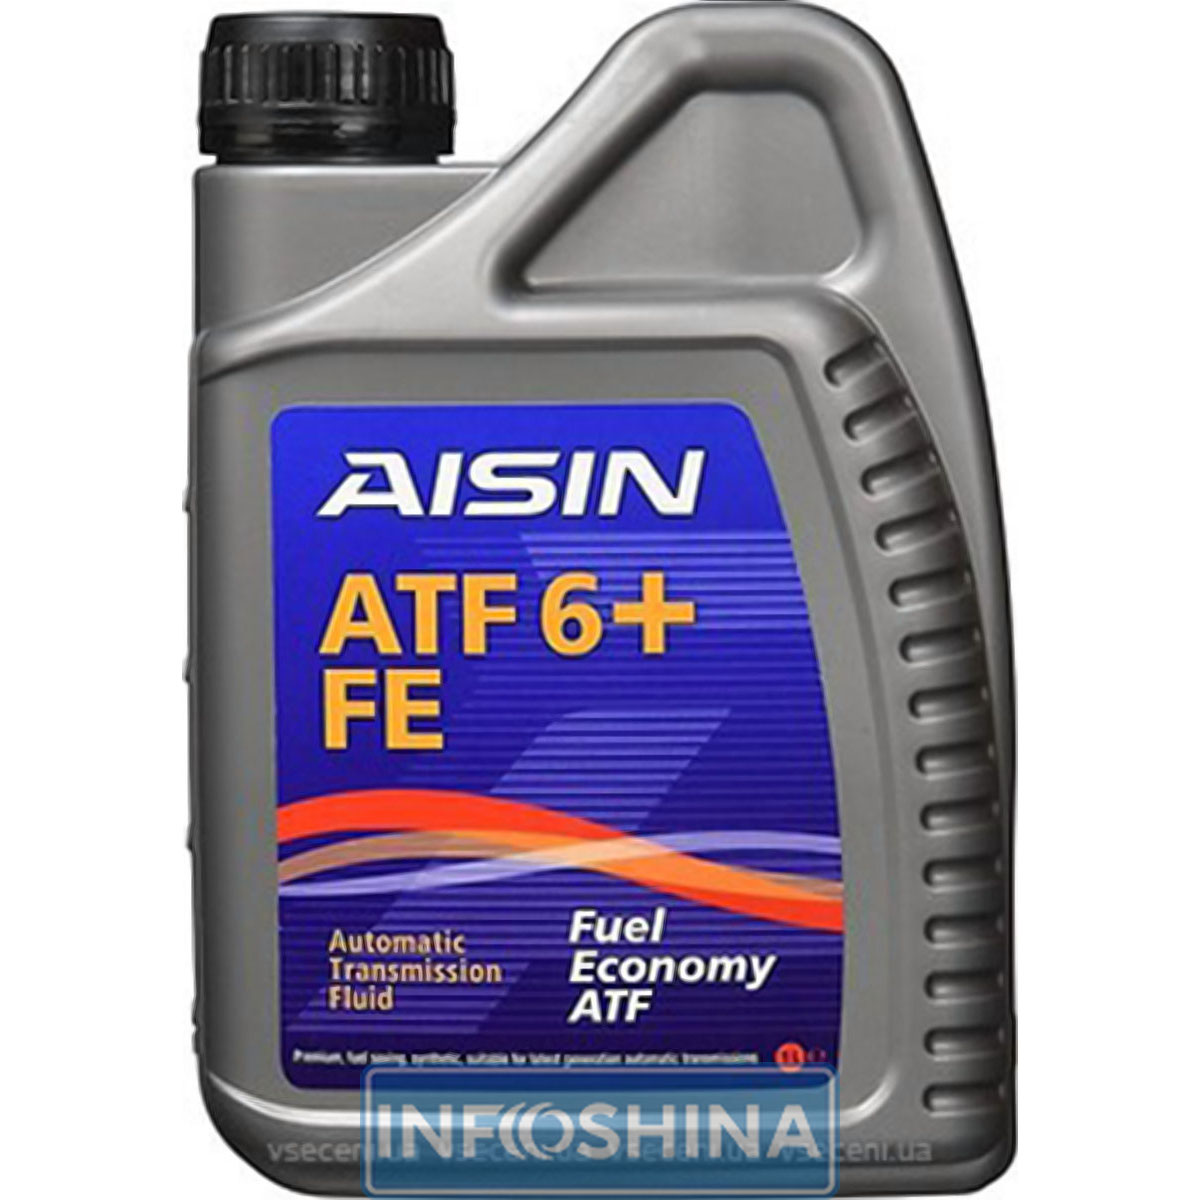 AISIN ATF 6+ FE Dexron-VI